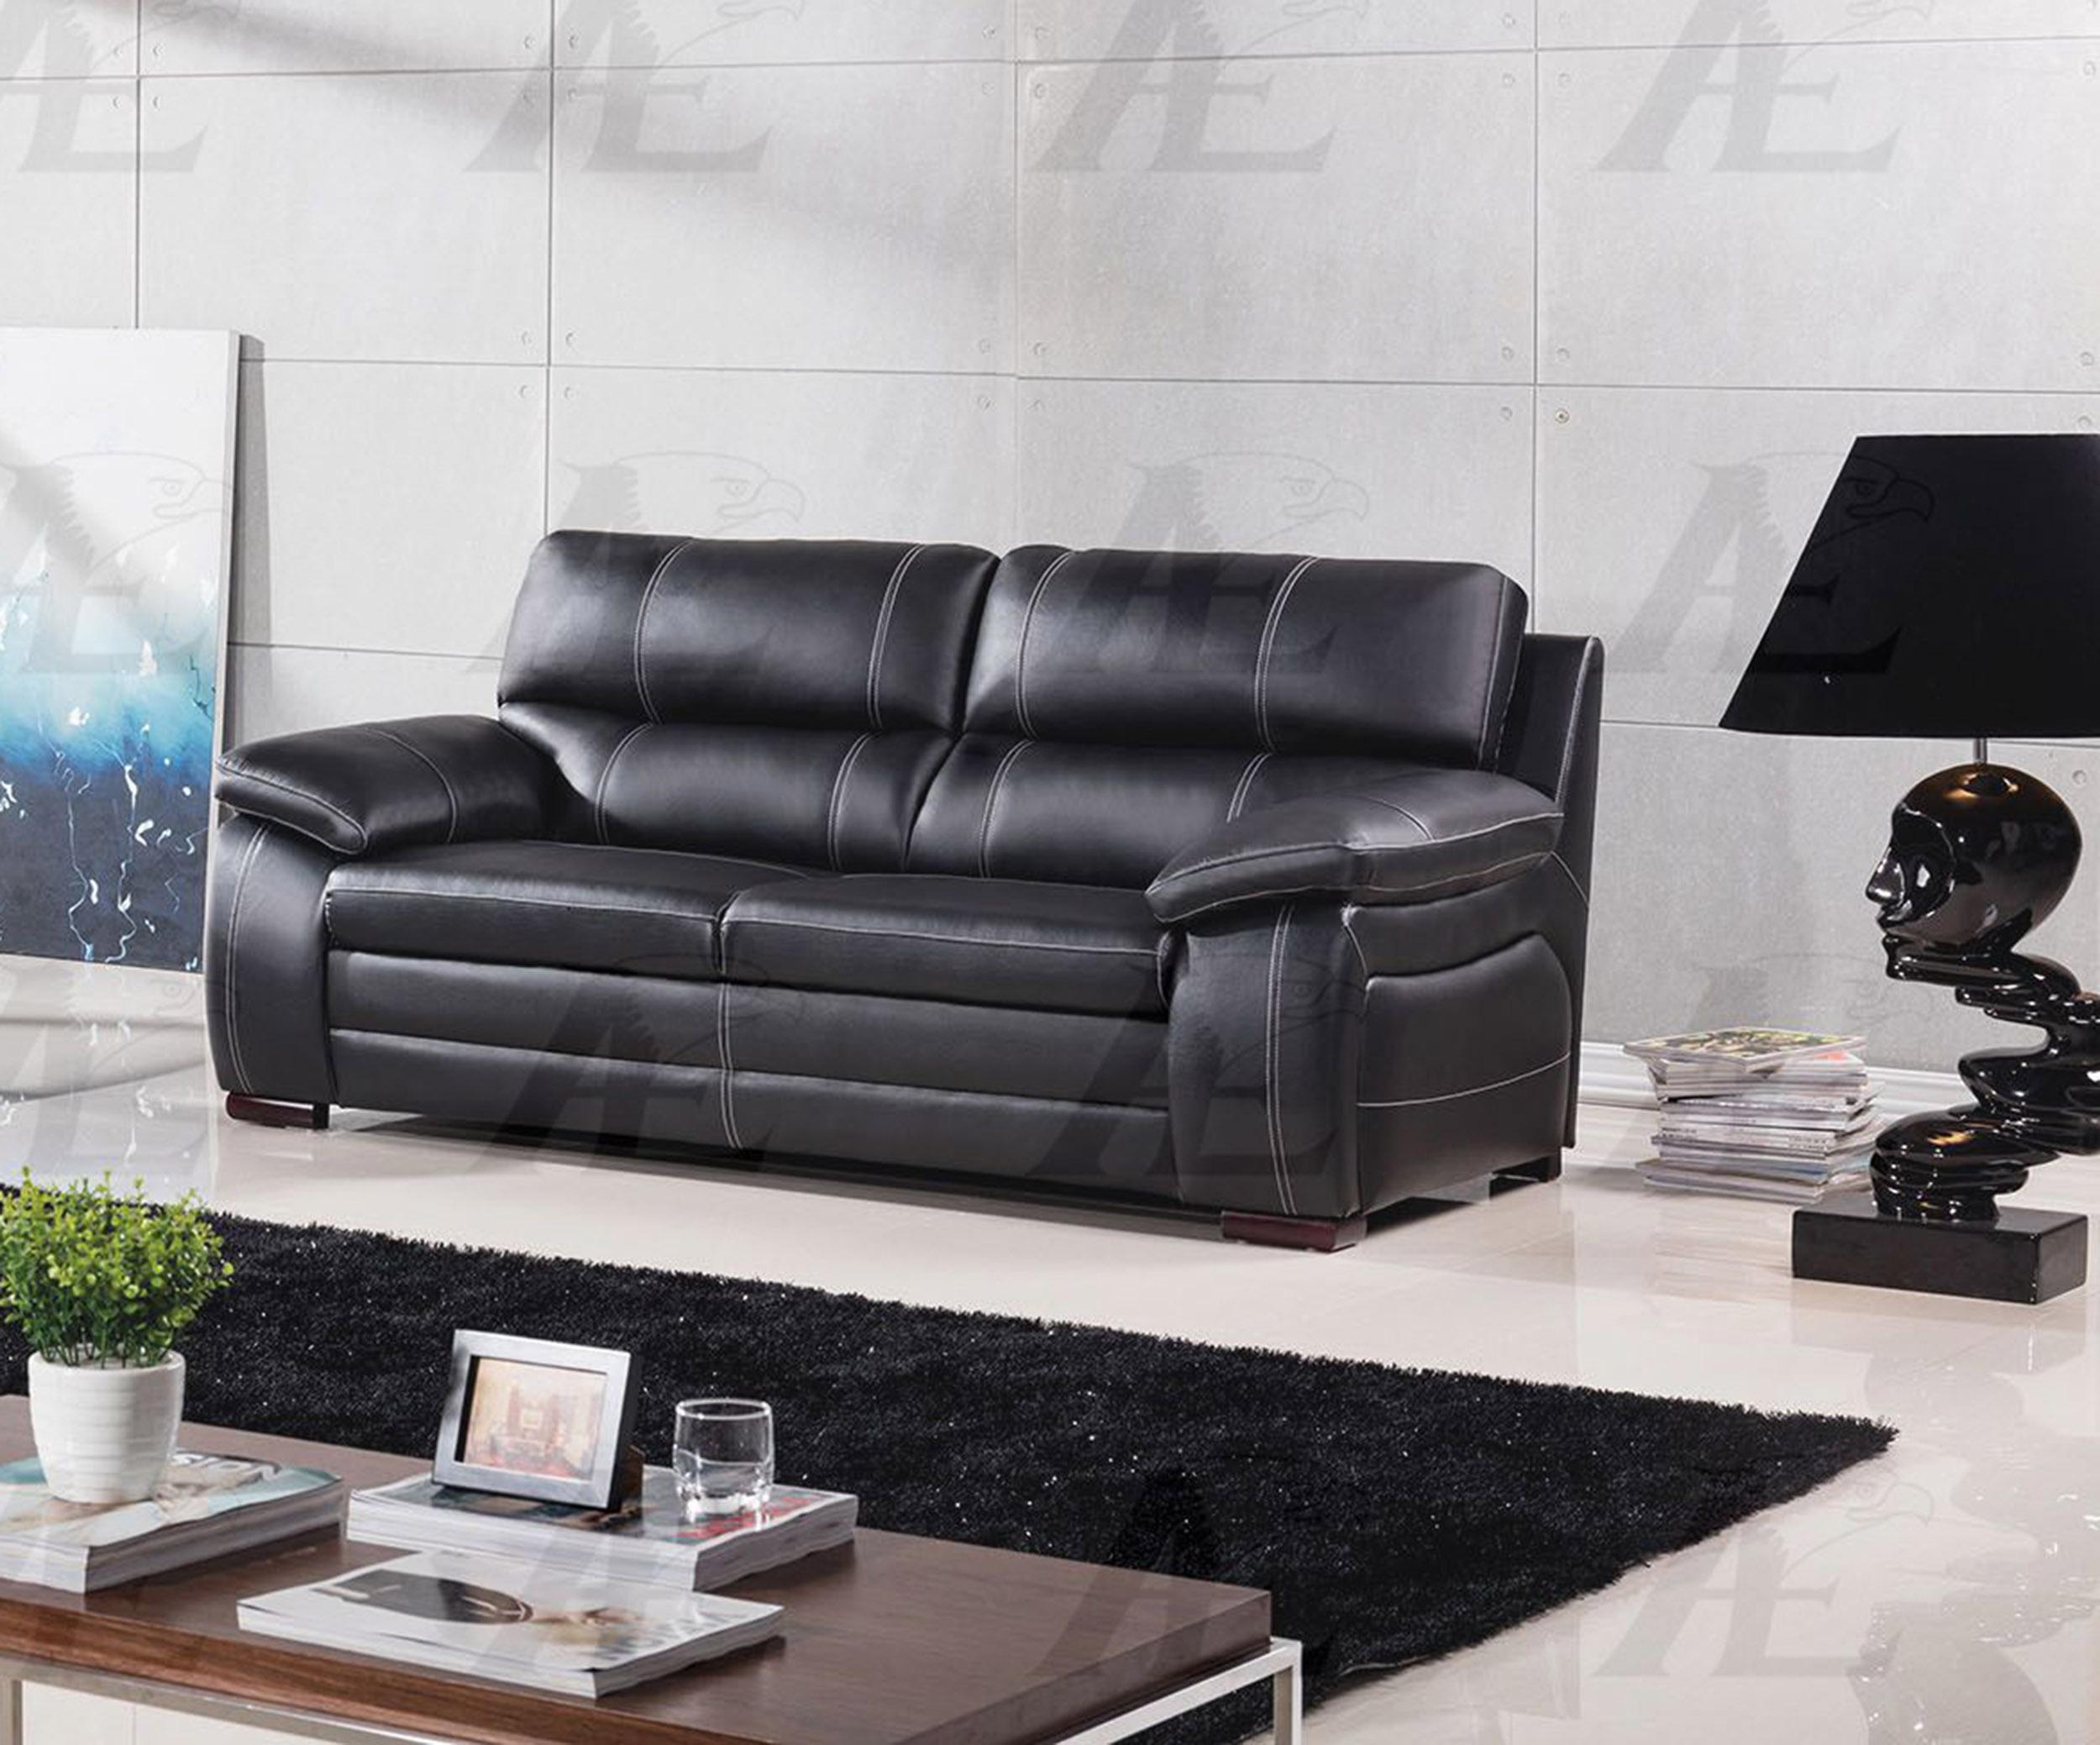 

    
American Eagle Furniture EK-B520-BK Black Sofa Genuine Leather  Modern
